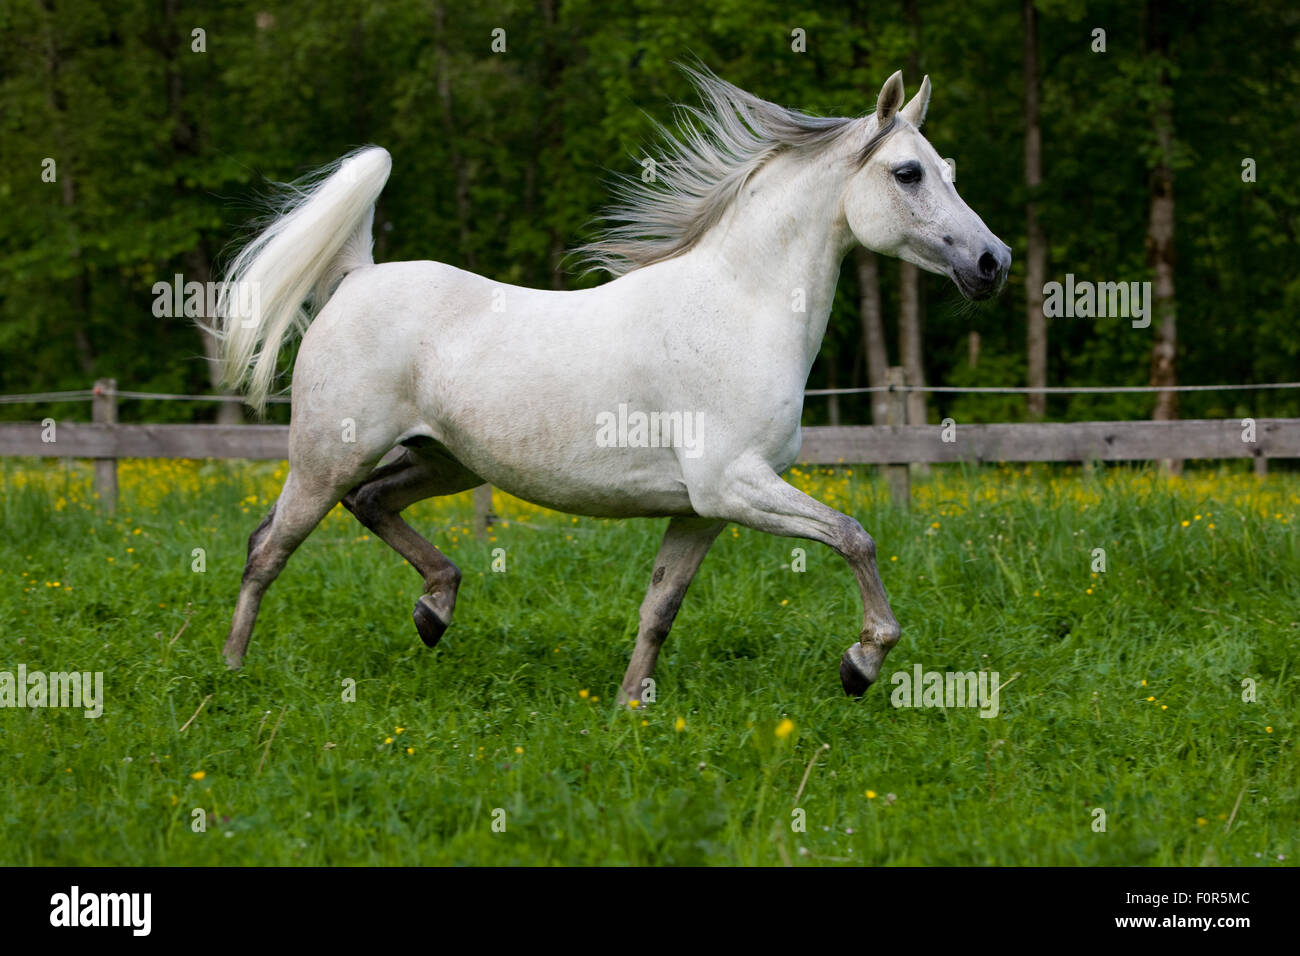 Thoroughbred Arabian Horse, bianco, trotto in un prato Foto Stock